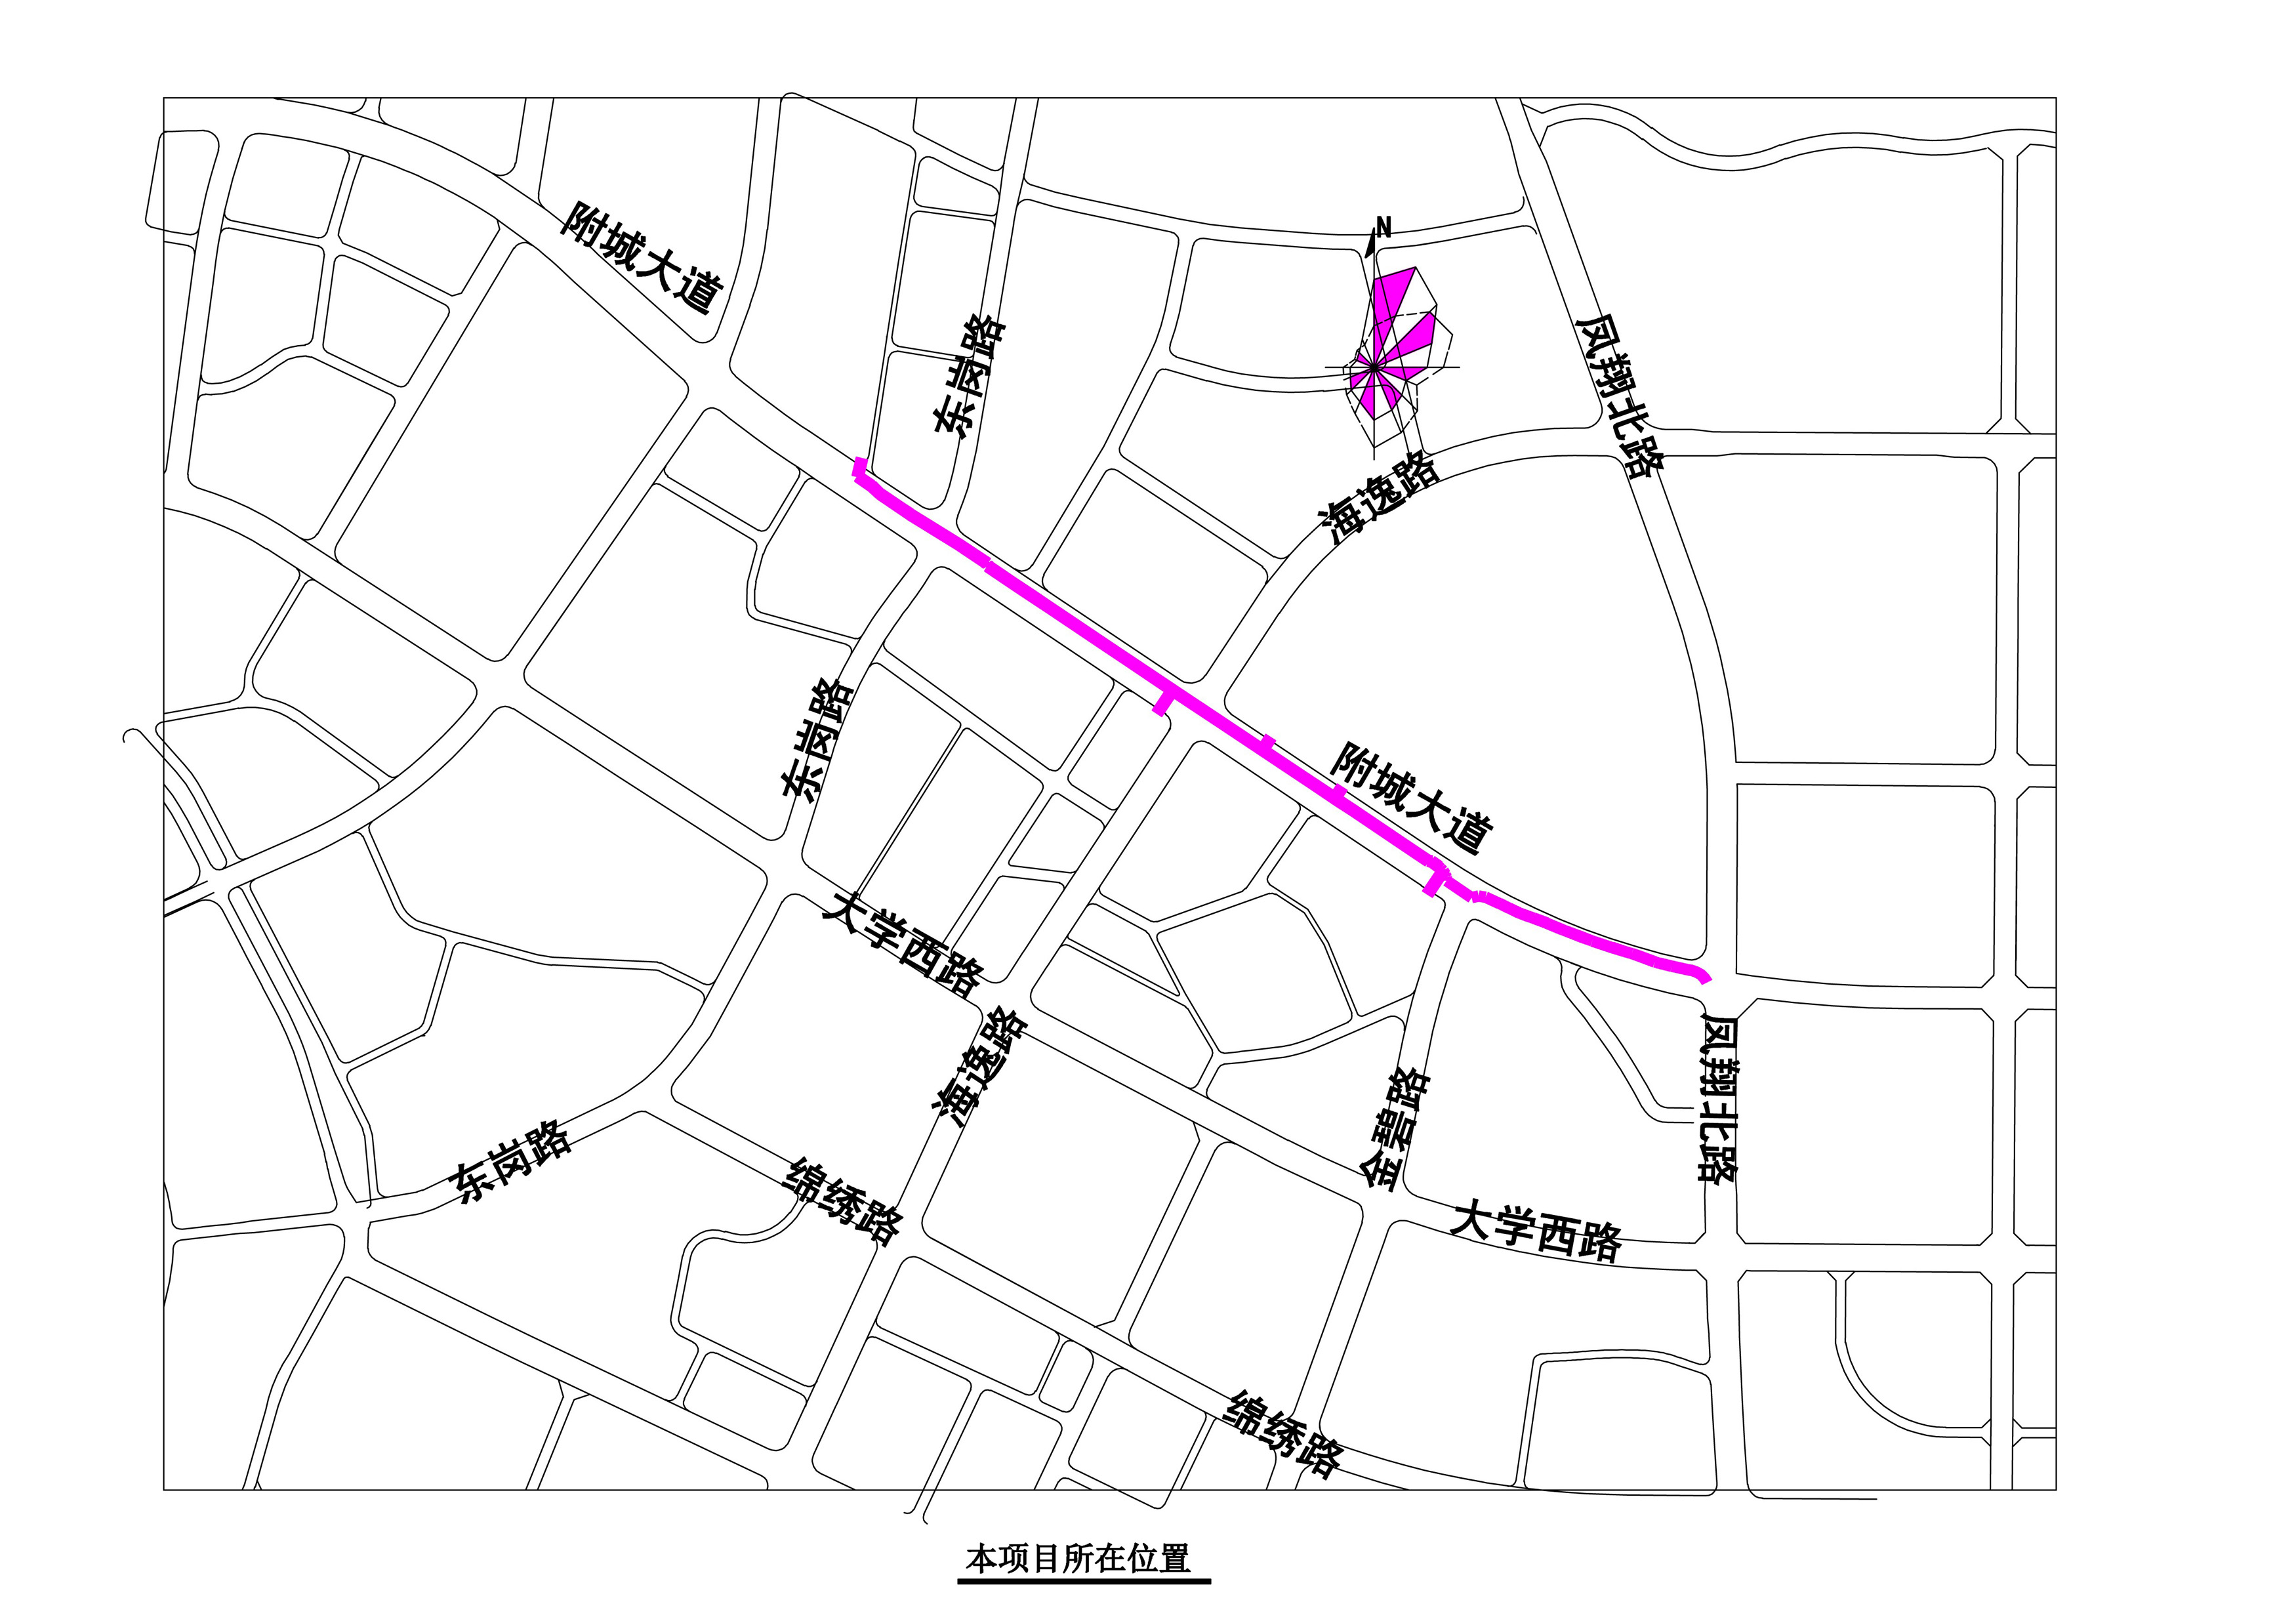 附城大道（东岗路至凤翔北路）市政中压燃气管道-区位图 .jpg